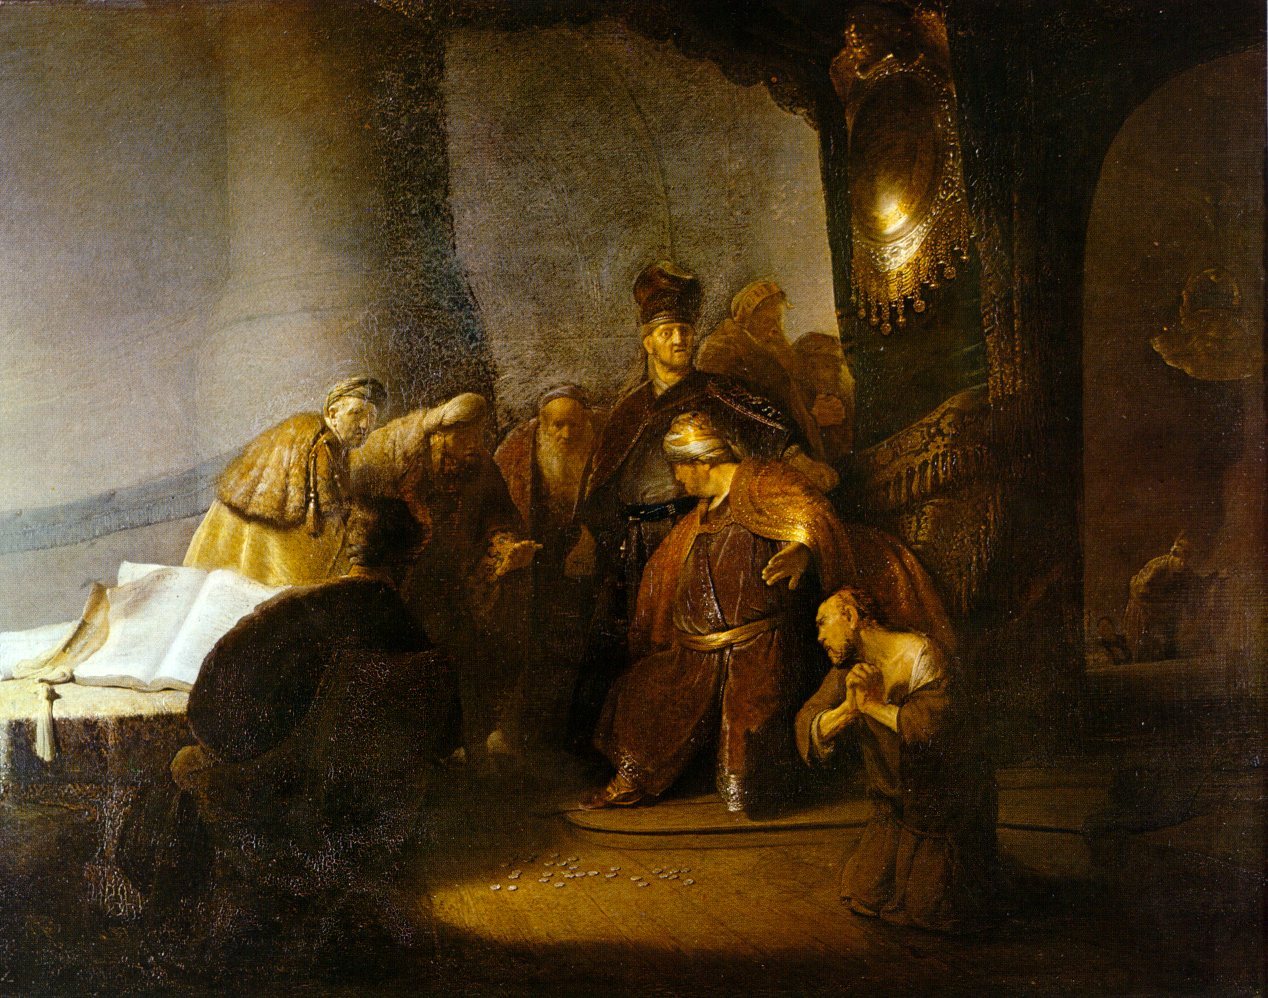 Рембрандт Харменс ван Рейн. "Иуда возвращает 30 серебряников". 1629.